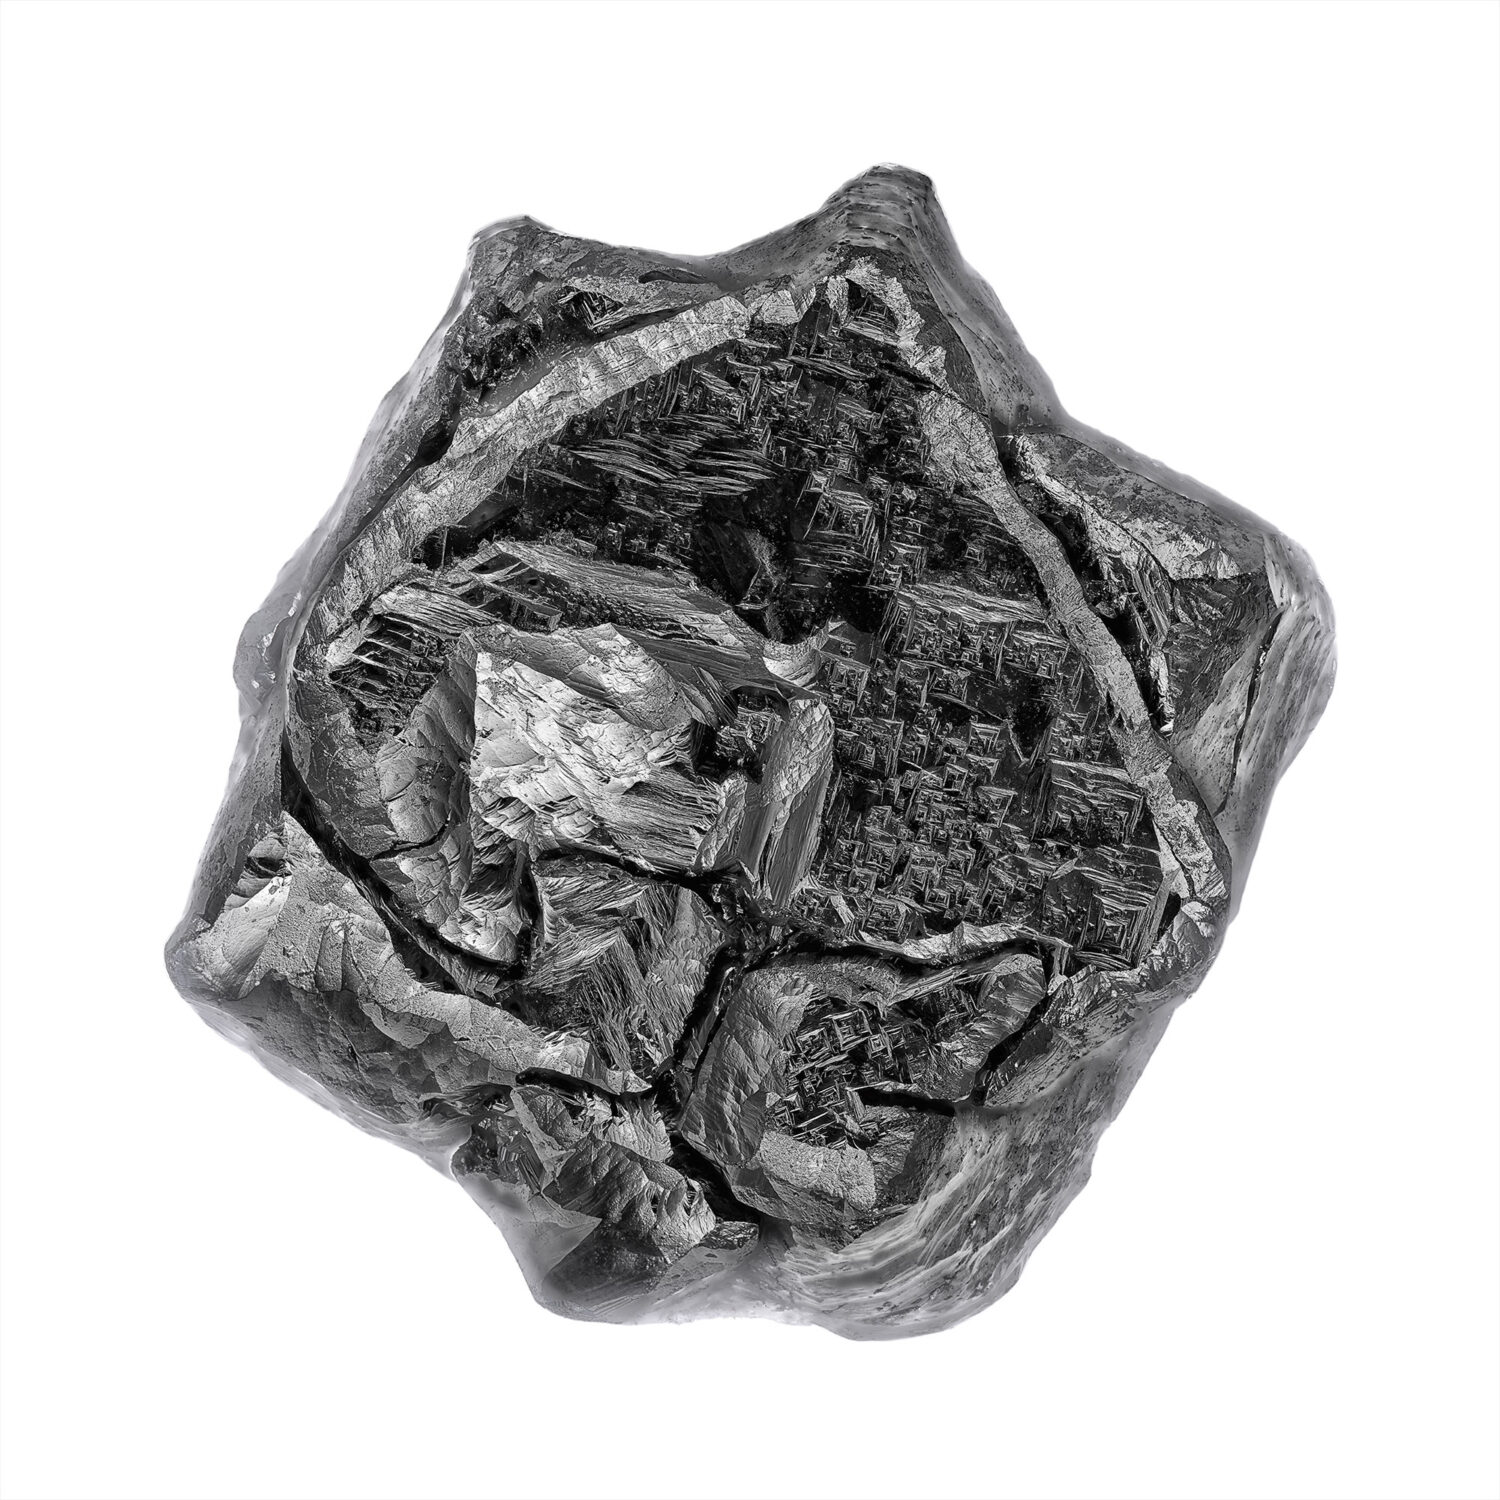 Schwarzer Diamant - Black Diamond (Breite 3 Millimeter) - Ein schwarzer Zwillingskristall mit vielen Ätzstrukturen.- Fotografie Erwin Geiss